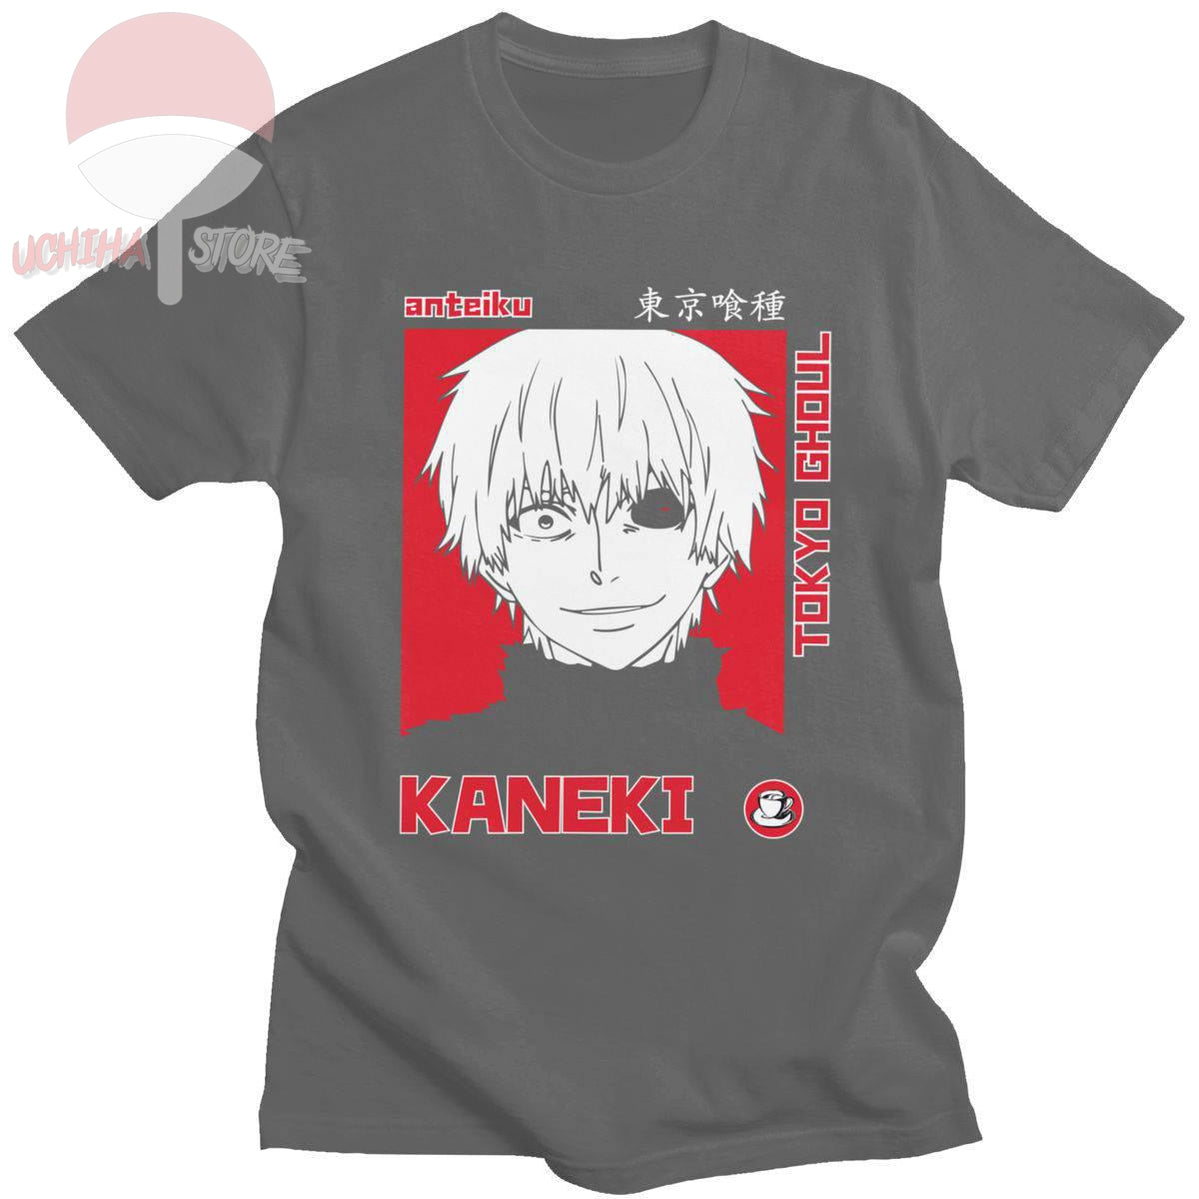 Kaneki Tokyo Ghoul T-shirt - uchihasstores